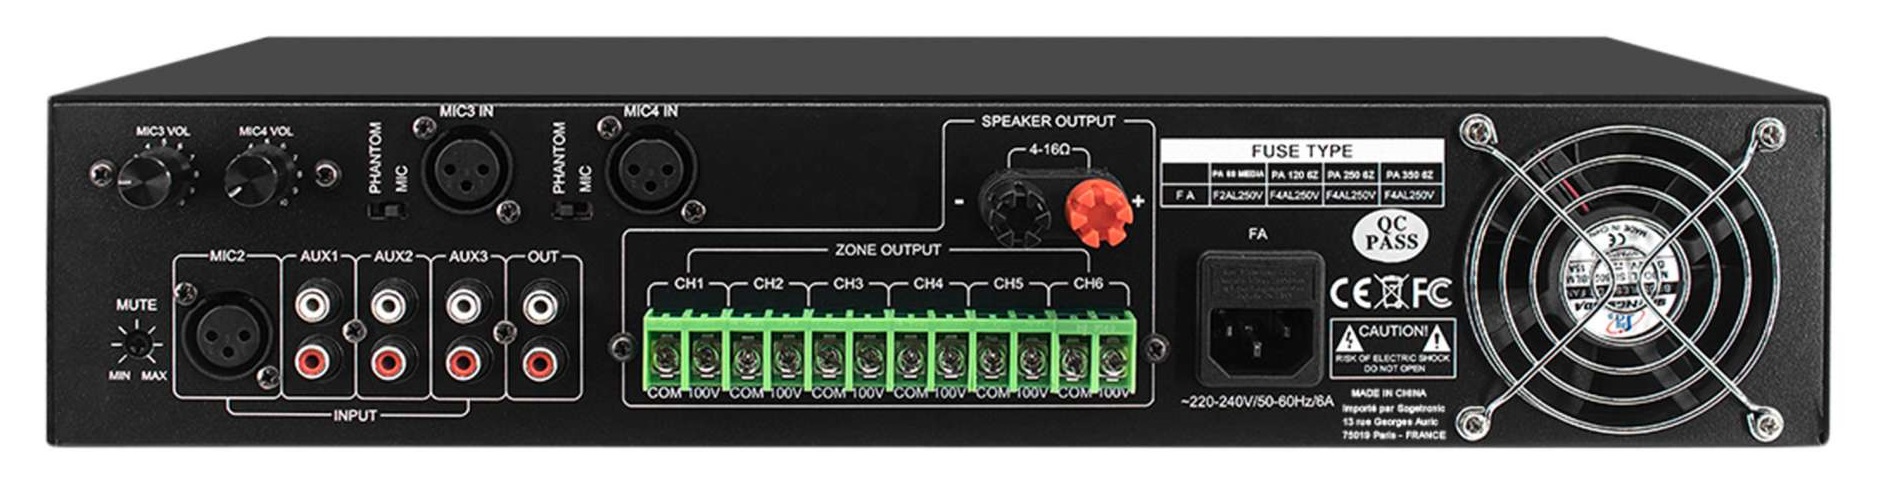 Definitive Audio Pa 350 6z - Etapa final de potencia de varios canales - Variation 1